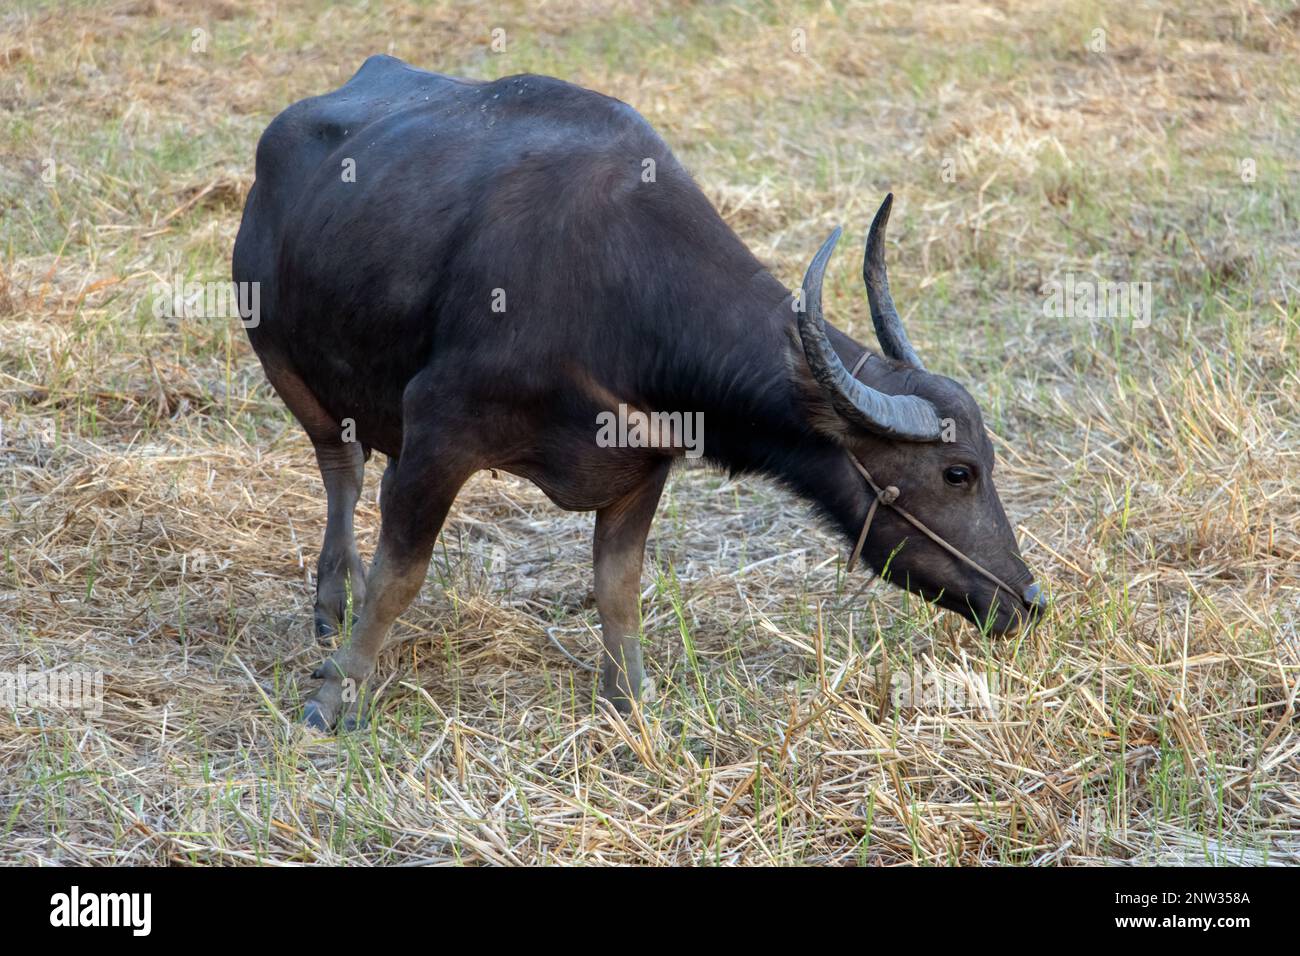 A water buffalo is grazing in a meadow near a village Stock Photo